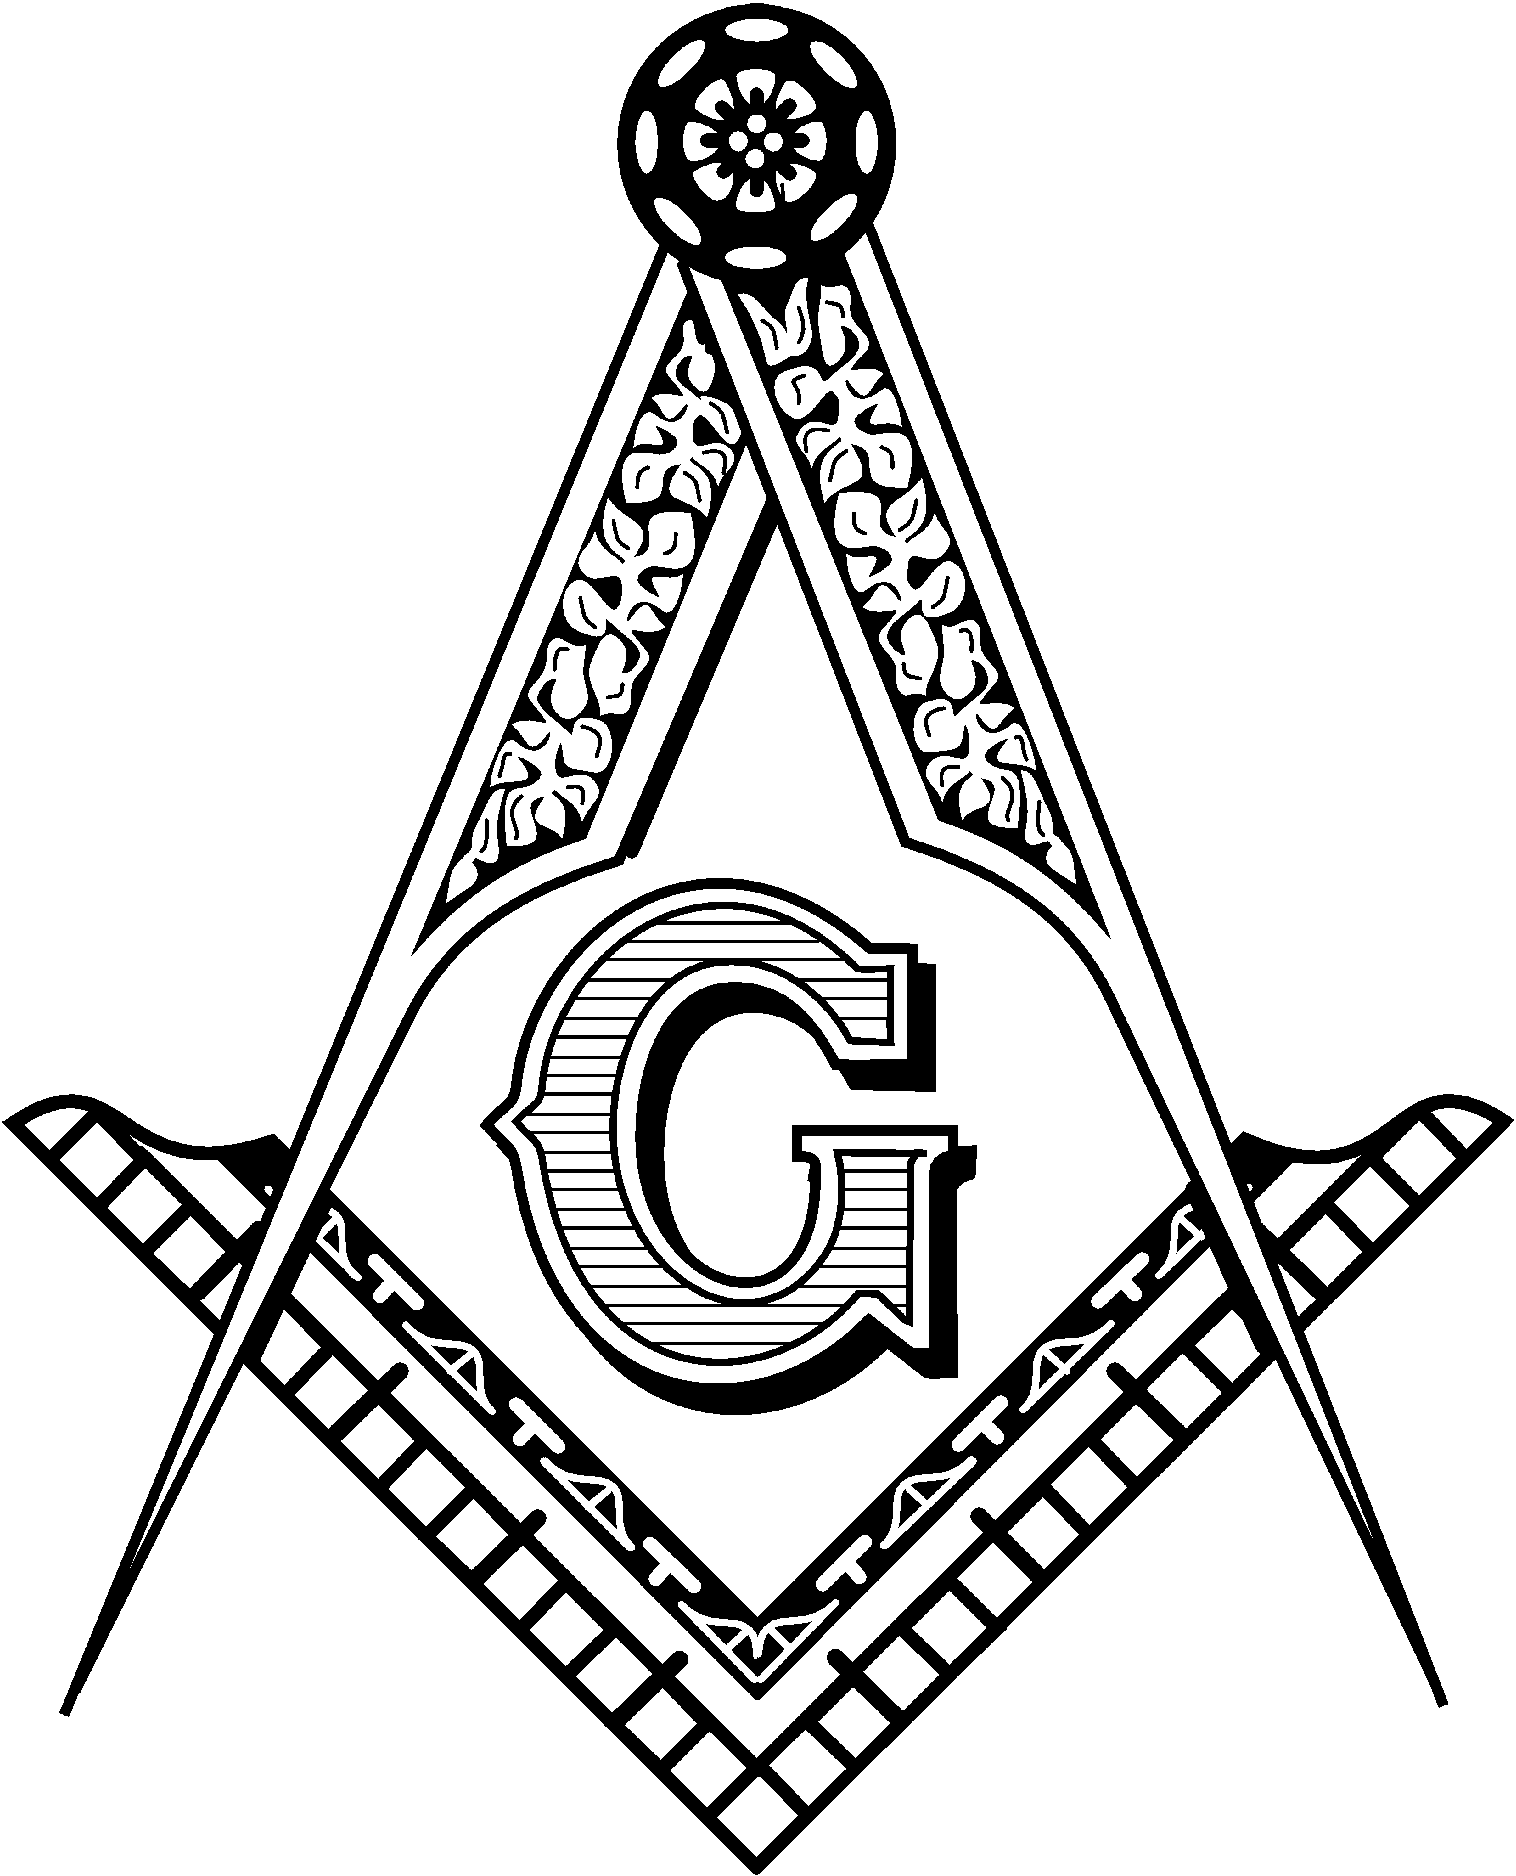 Masonic Logo - Free Masonic Emblem Cliparts, Download Free Clip Art, Free Clip Art ...